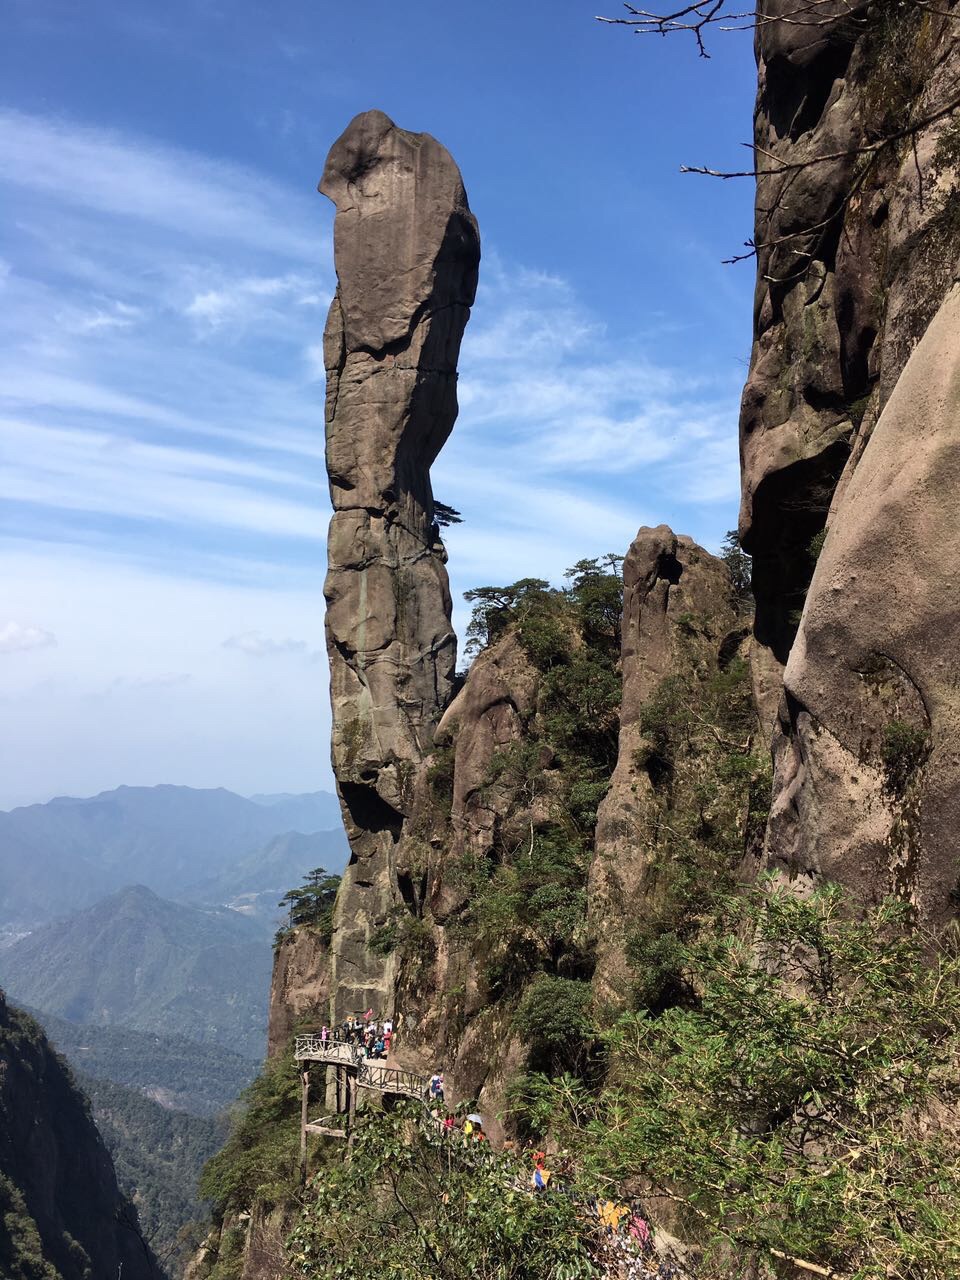 【携程攻略】三清山巨蟒出山景点,三清山风景名胜区最著名的景点之一